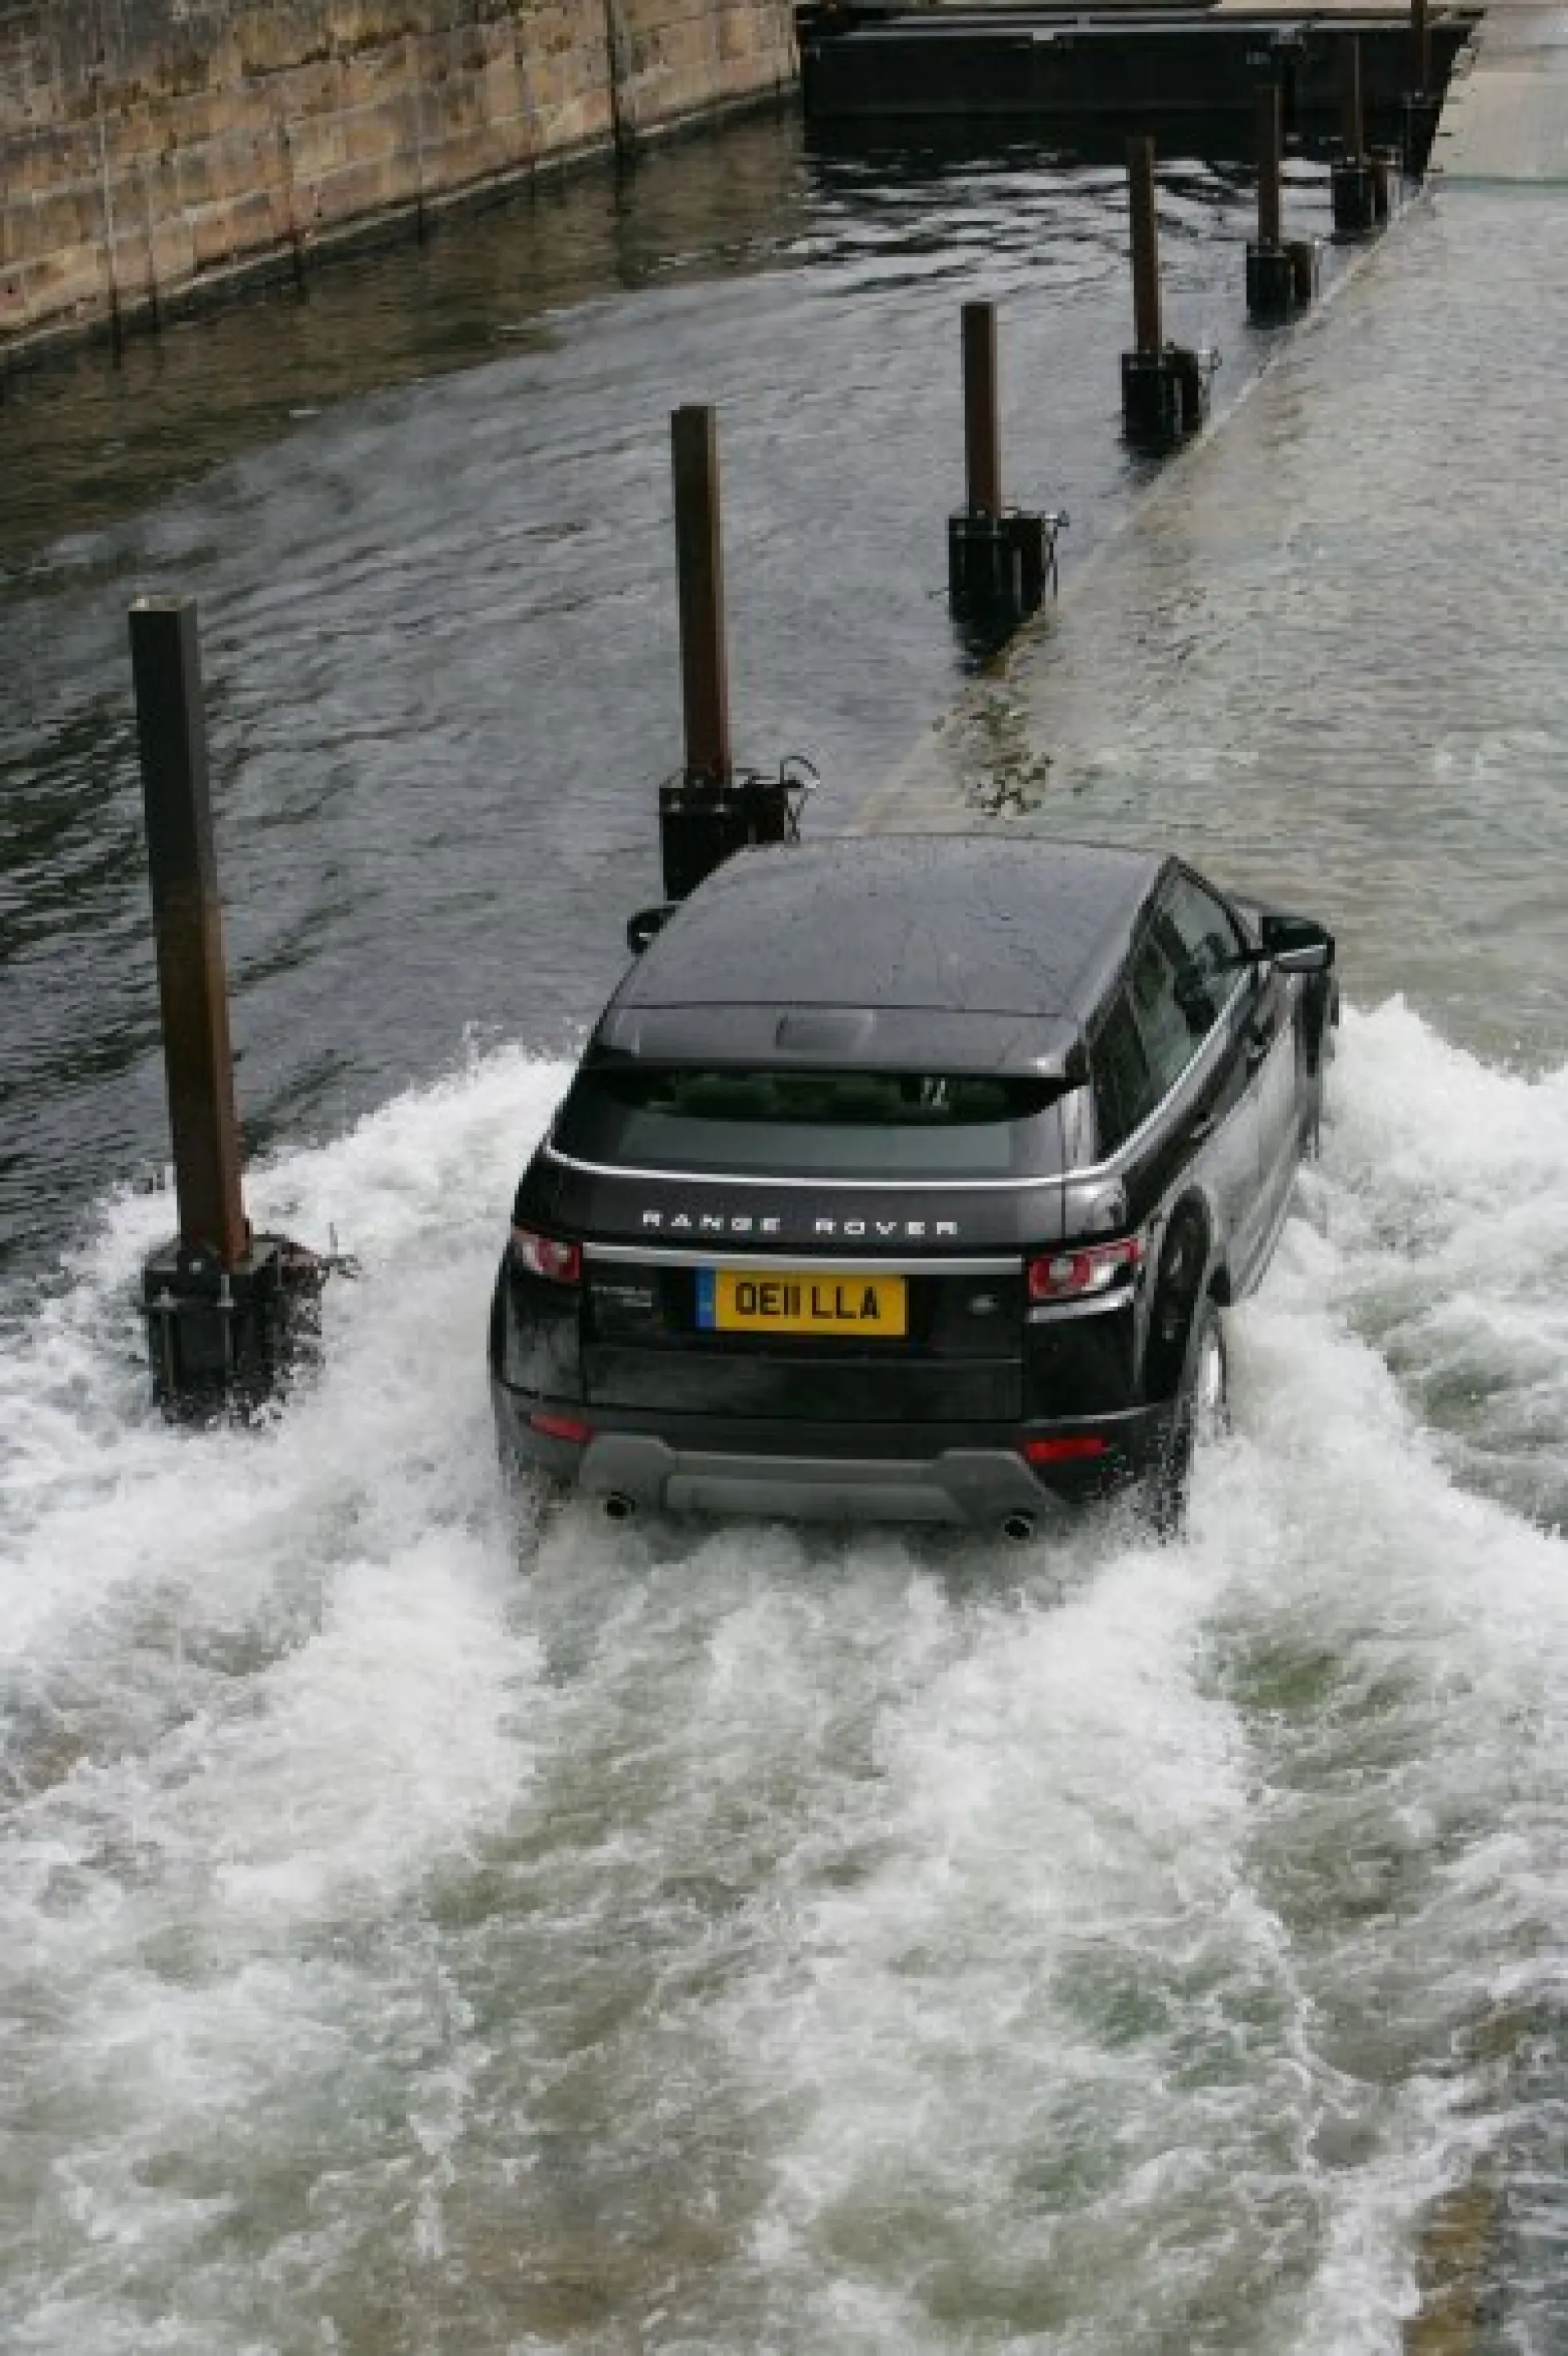 Land Rover Range Rover Evoque nuove foto ufficiali - 26